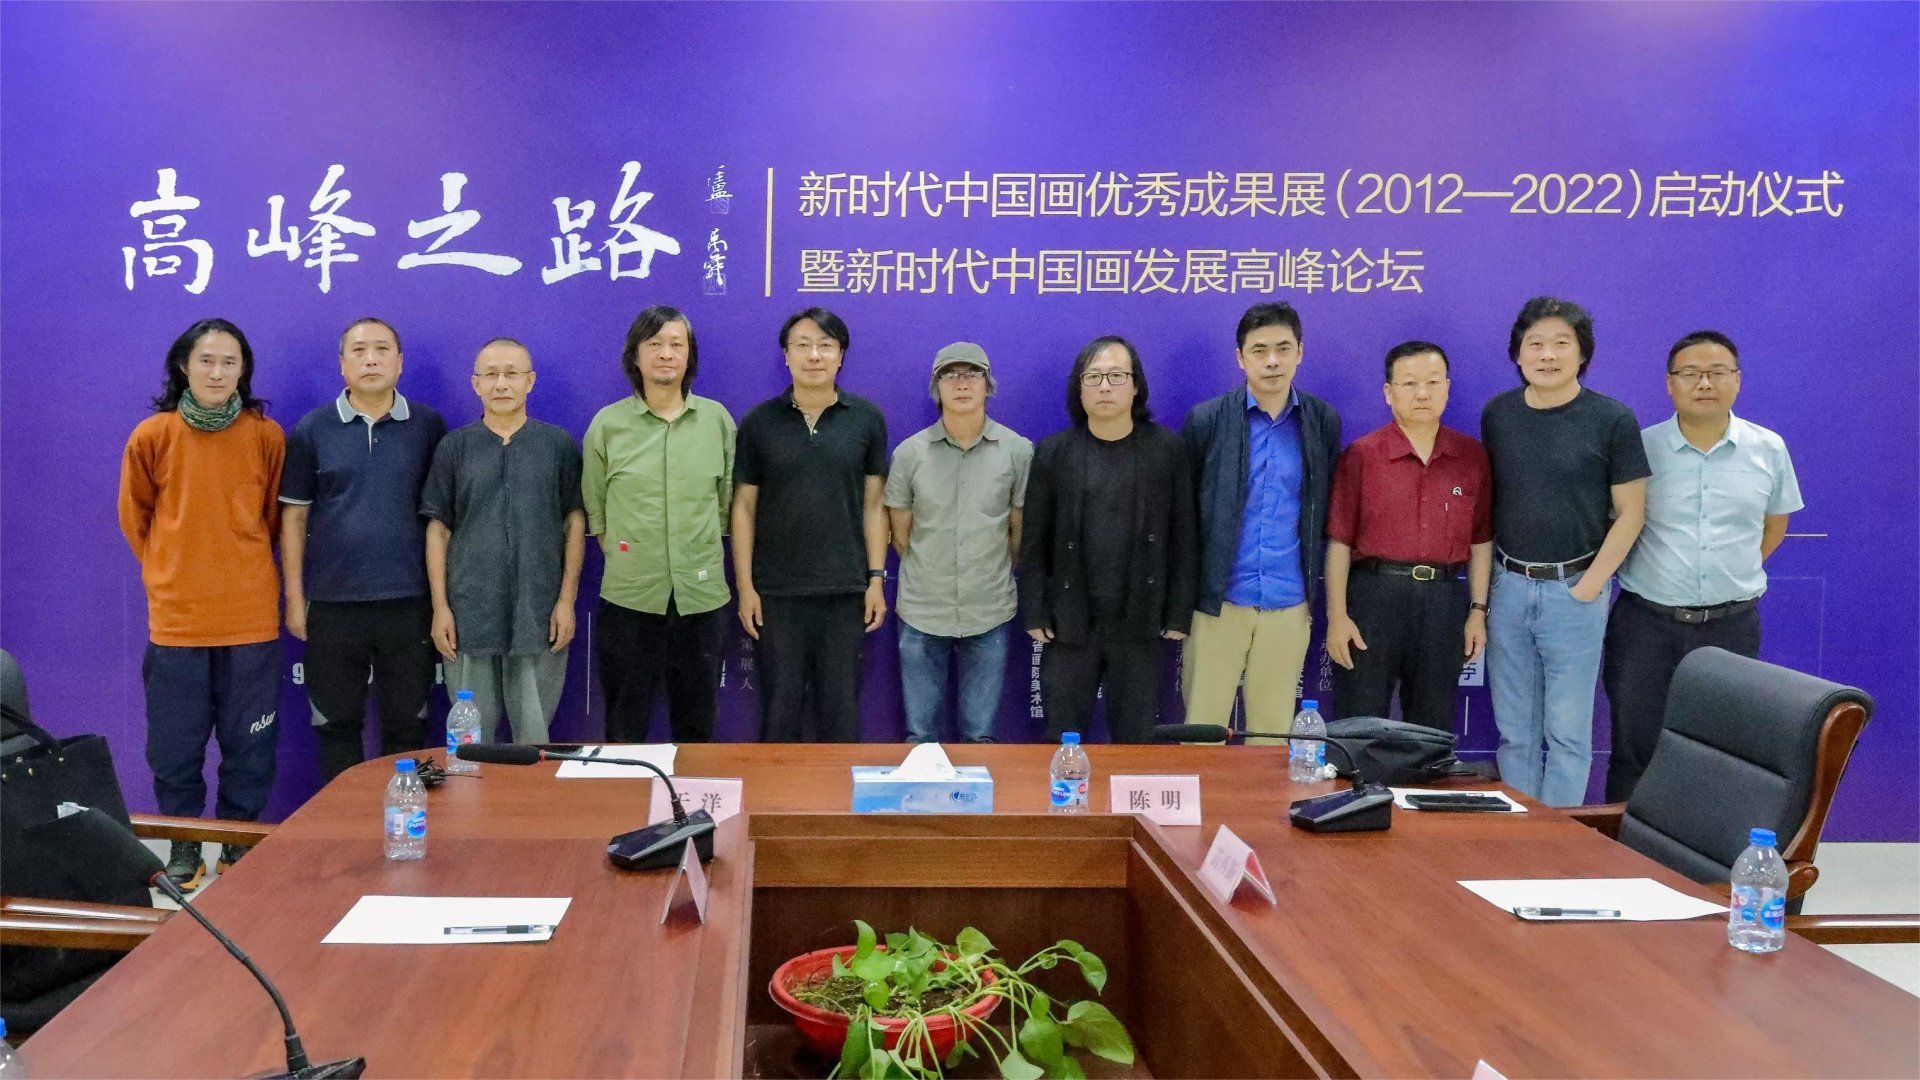 广东画院4位画家参加“高峰之路——新时代中国画优秀成果展(2012-2022)”